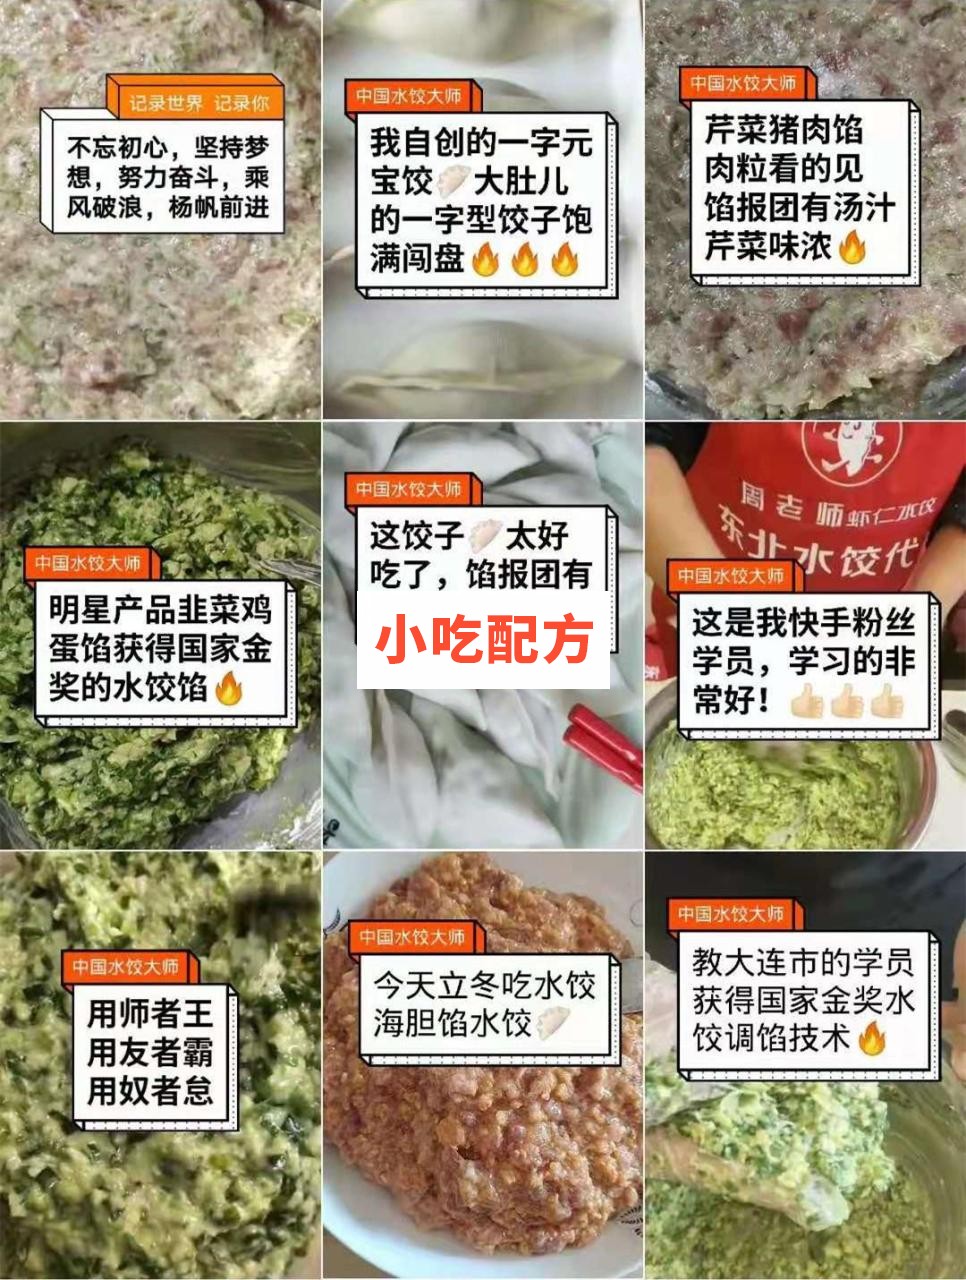 周老师高级水饺技术配方小吃技术联盟